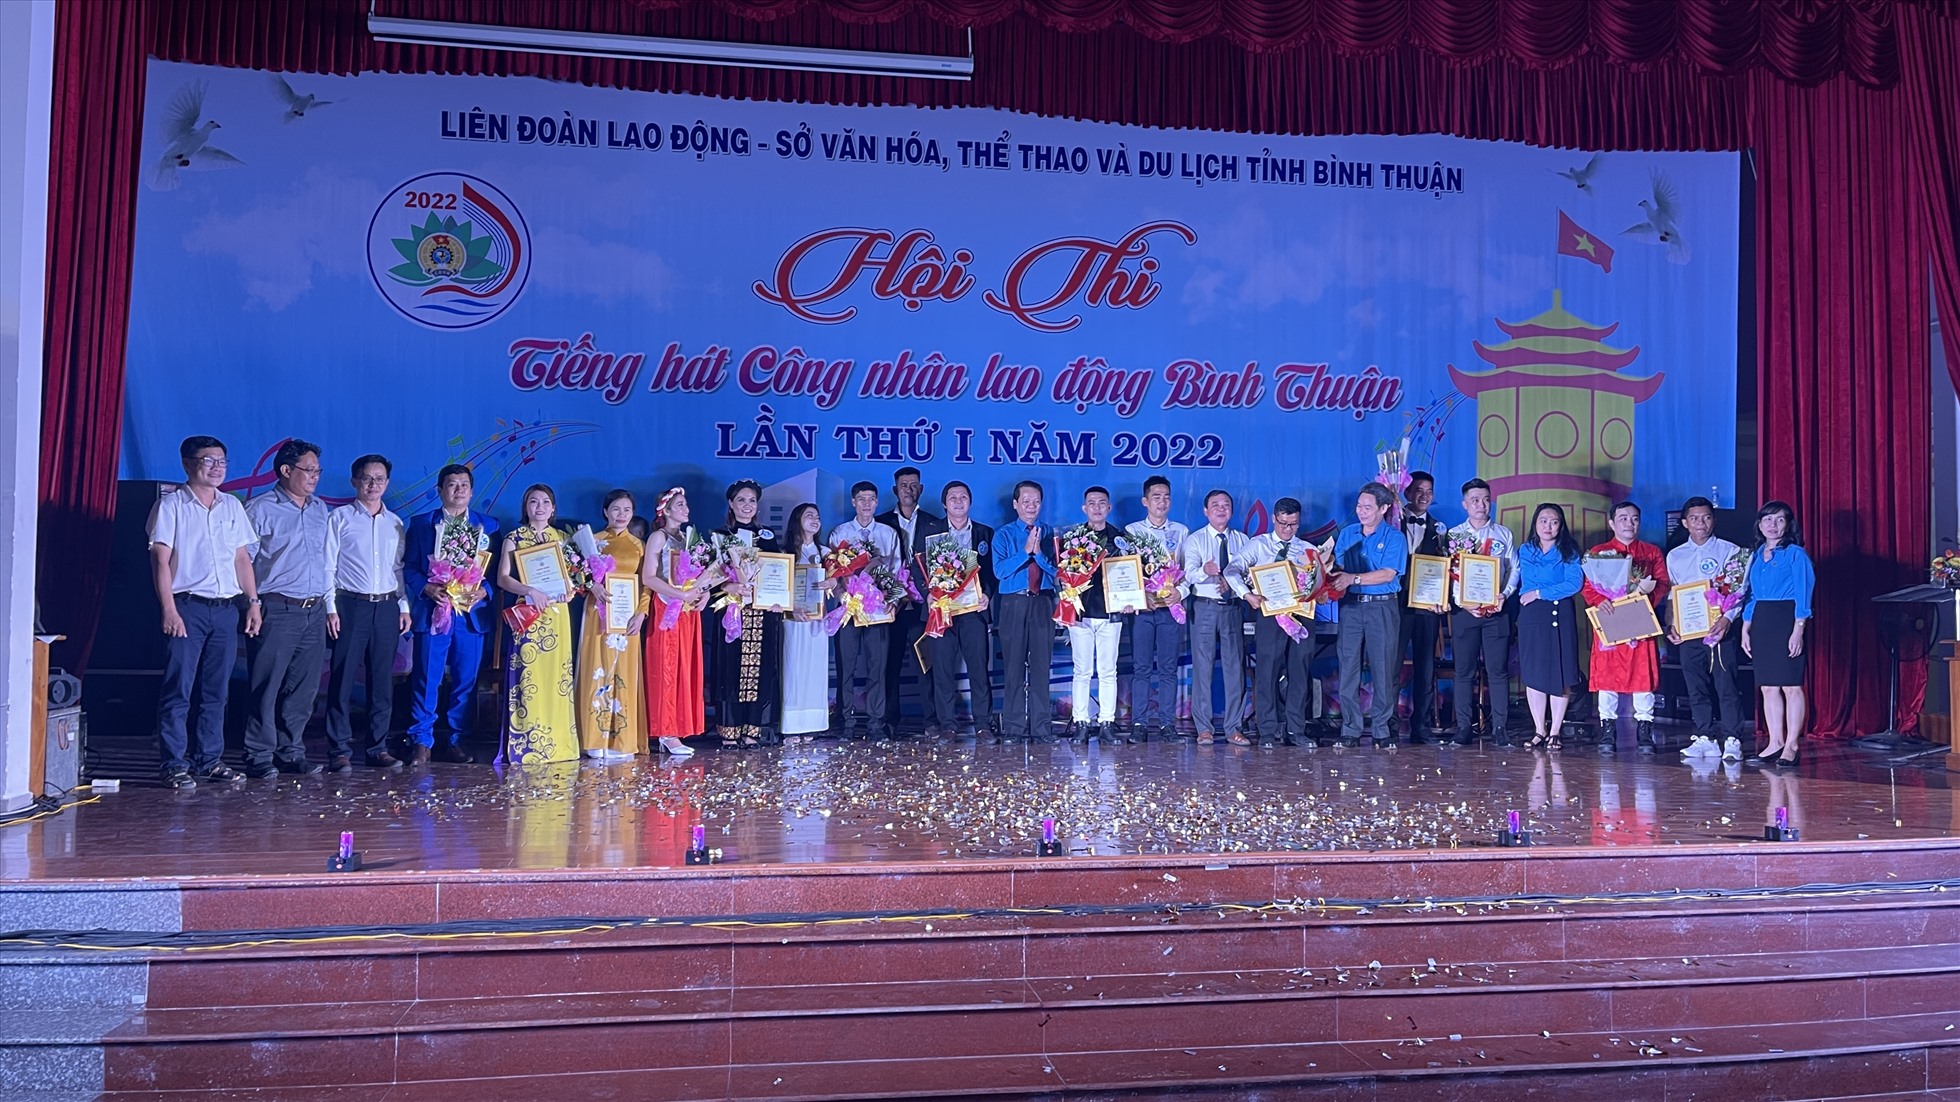 LĐLĐ tỉnh tổ chức Hội thi tiếng hát công nhân lao động Bình Thuận, sân chơi nghệ thuật cho người lao động. Ảnh: Duy Tuấn